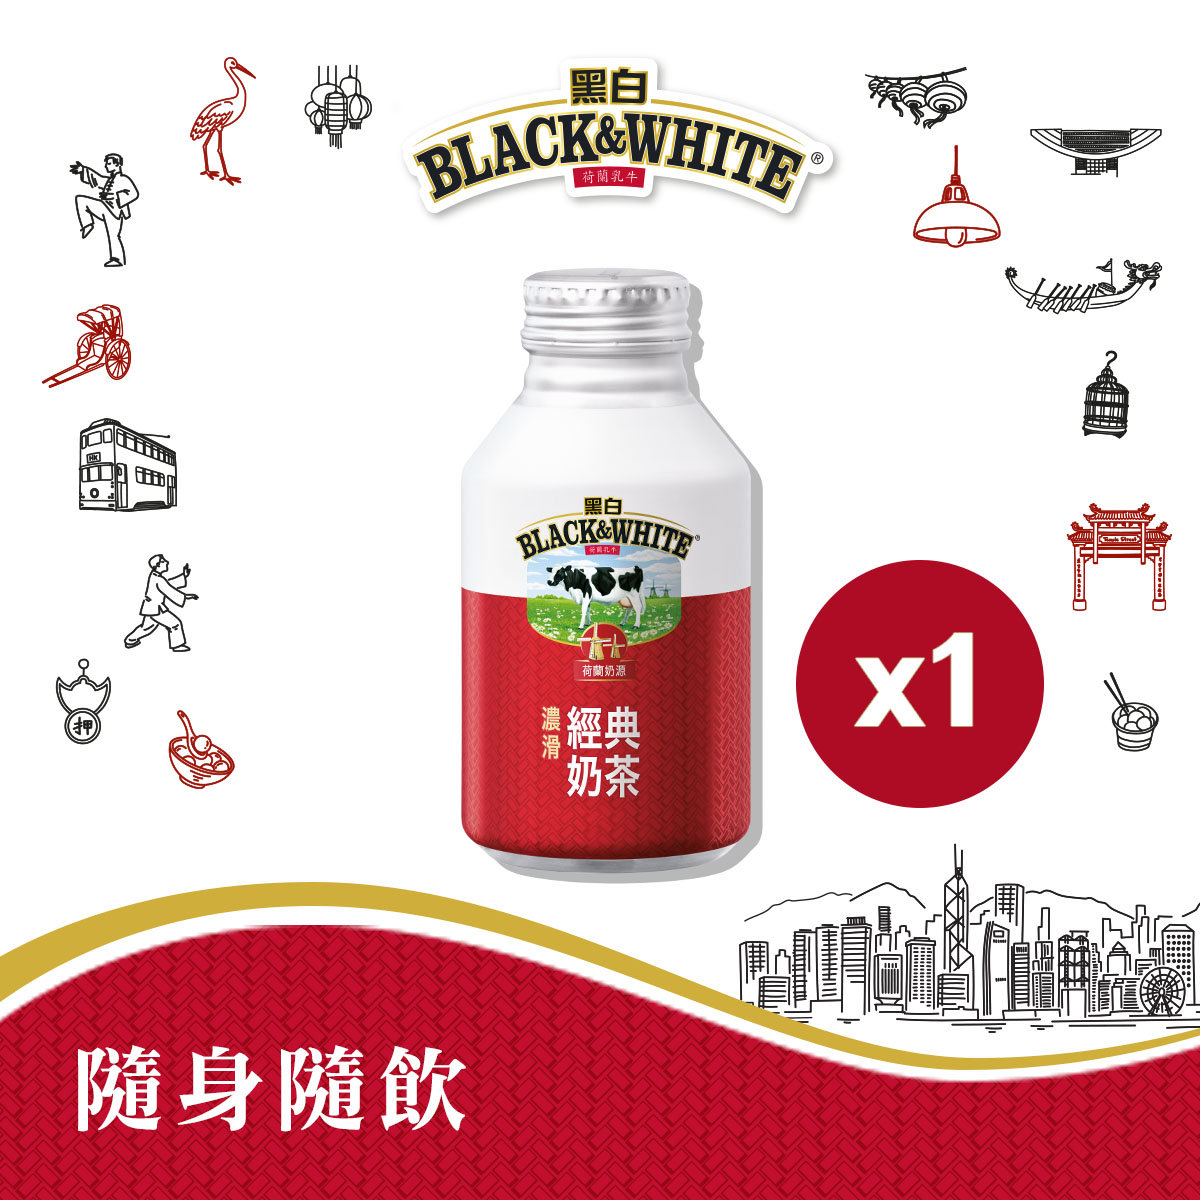 黑白®經典奶茶飲品 260ml x 1 支 #罐裝奶茶  #港式奶茶 #香滑濃厚